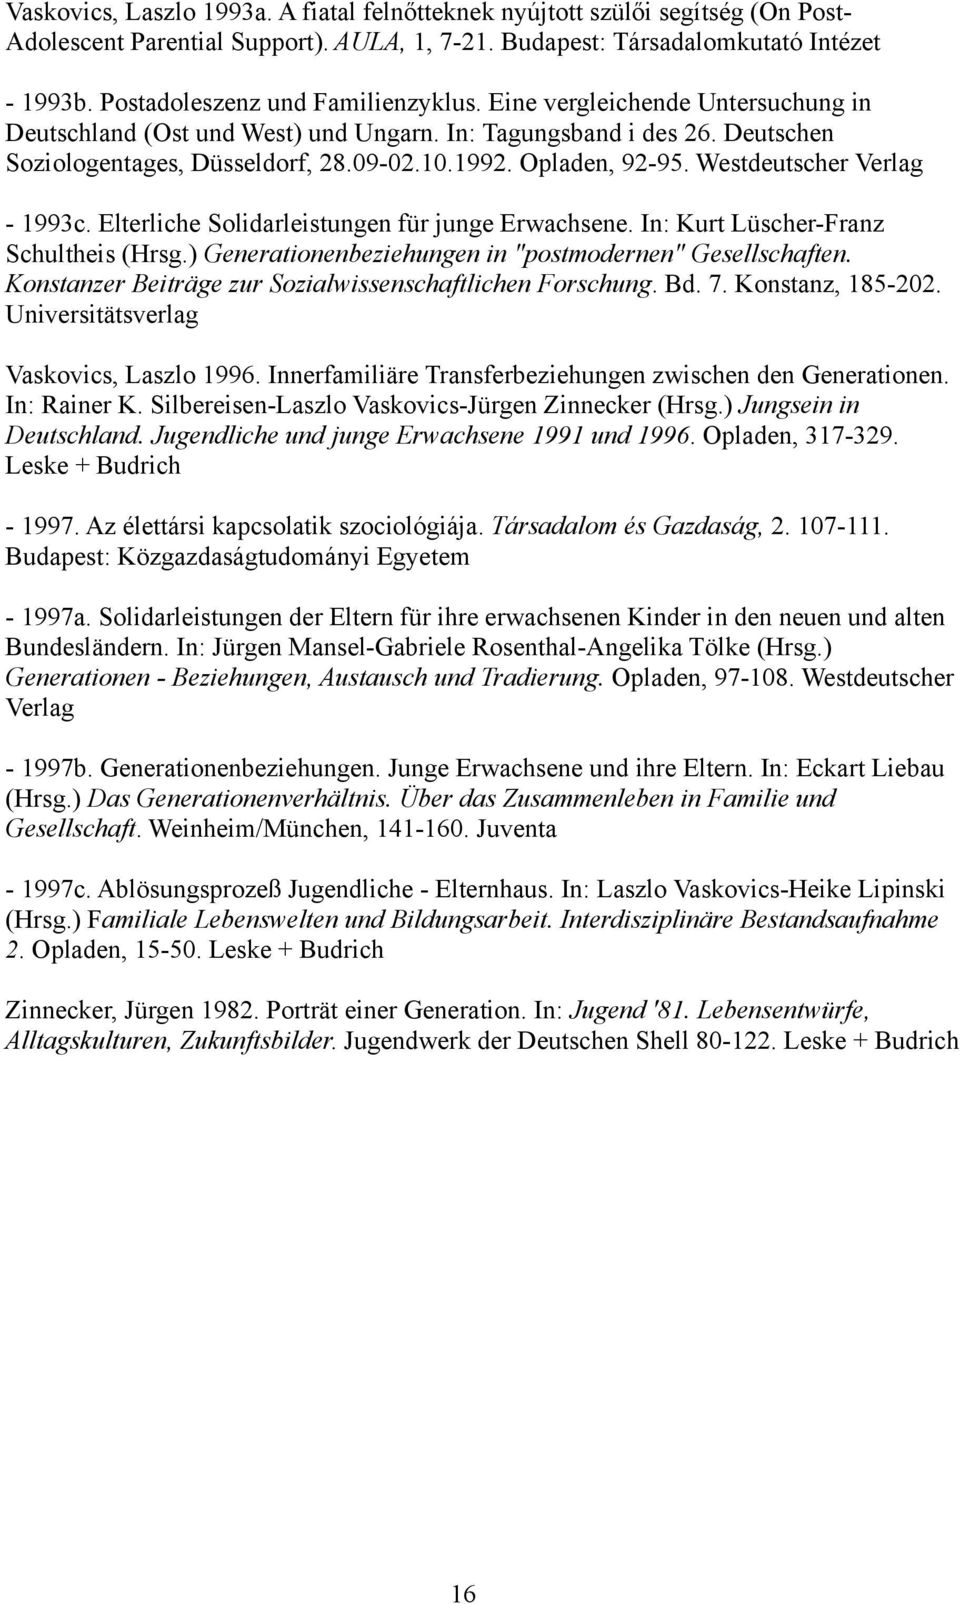 Opladen, 92-95. Westdeutscher Verlag - 1993c. Elterliche Solidarleistungen für junge Erwachsene. In: Kurt Lüscher-Franz Schultheis (Hrsg.) Generationenbeziehungen in "postmodernen" Gesellschaften.